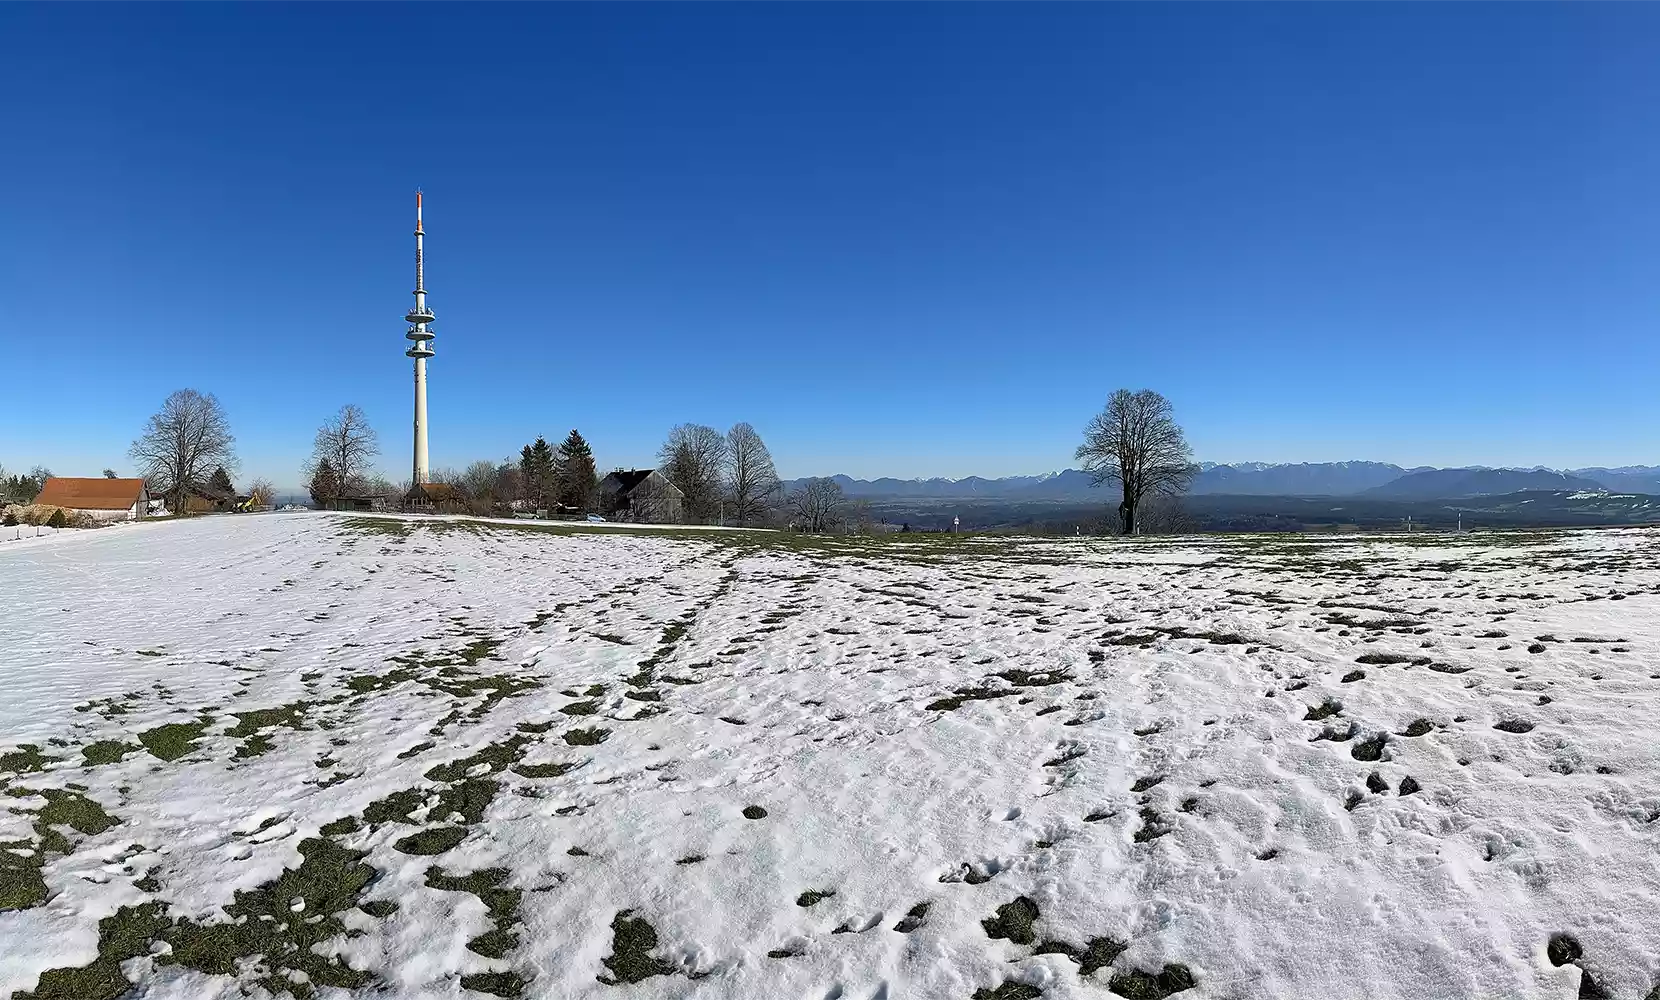 Hoher Peißenberg (988 m)